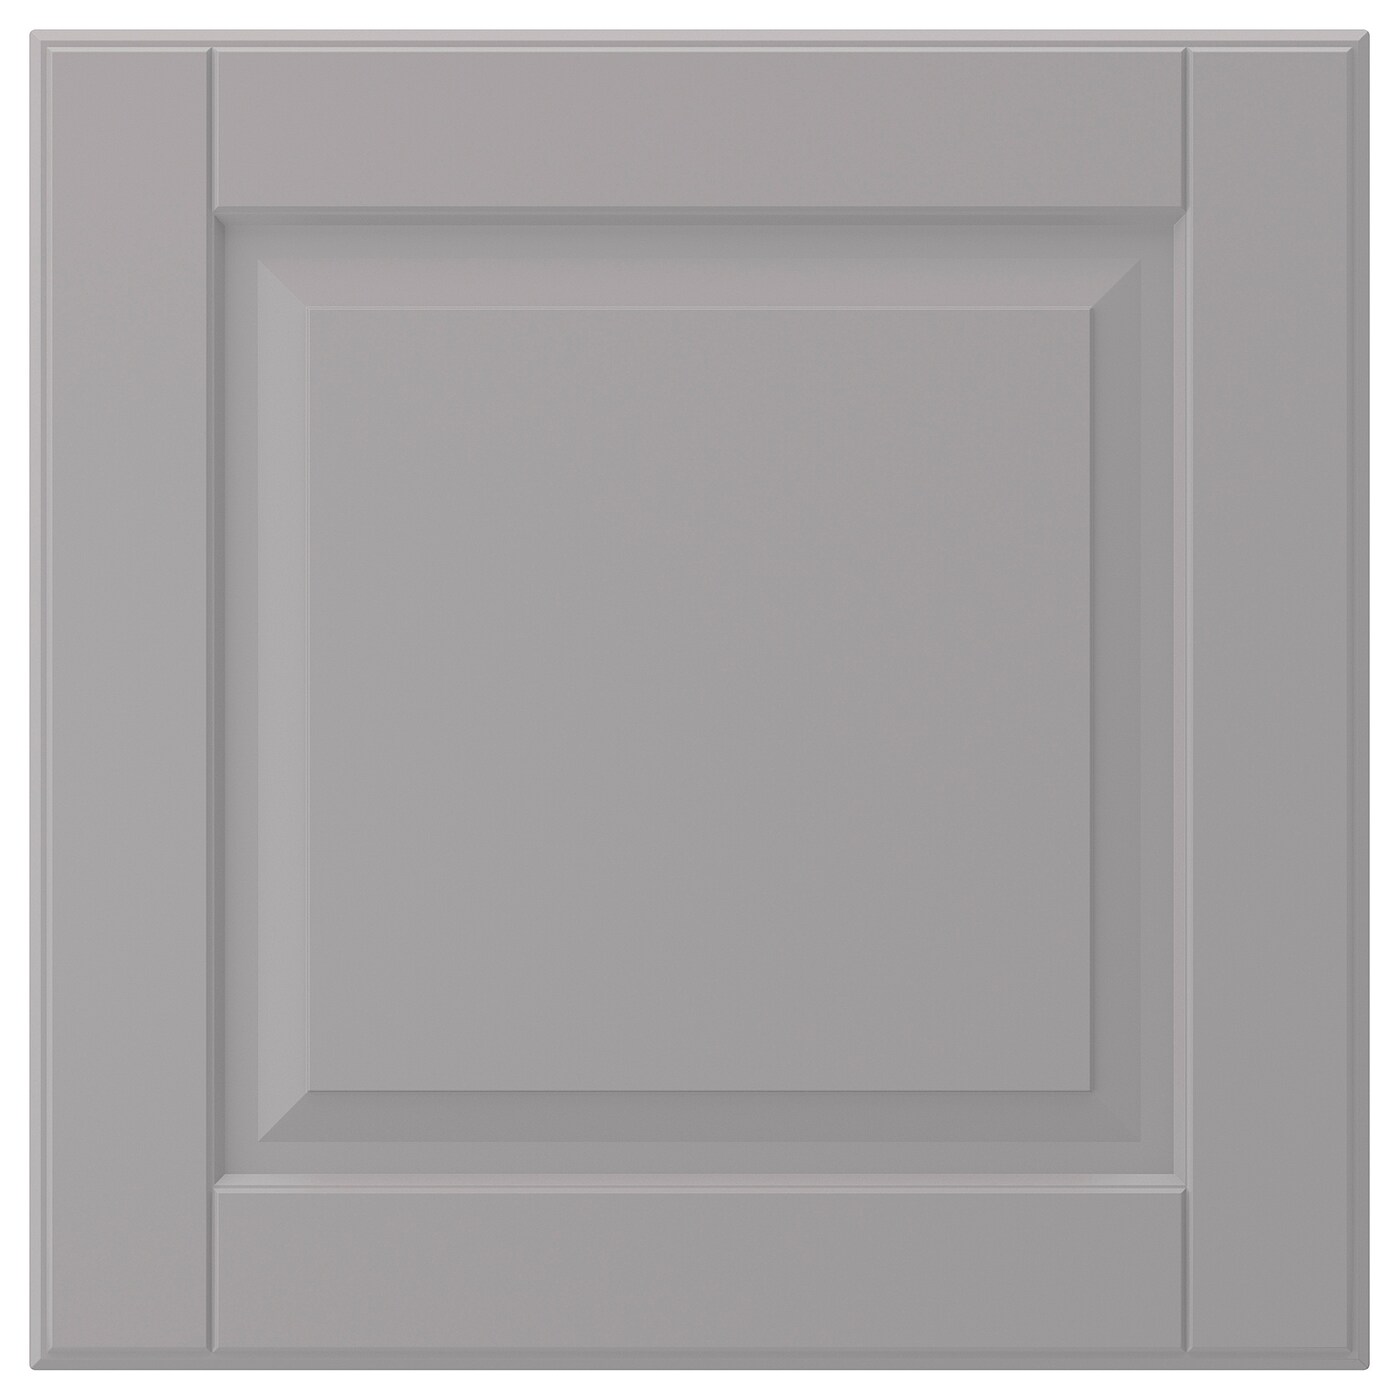 Фронтальная панель для ящика - IKEA BODBYN, 40х40 см, серый, БУДБИН ИКЕА